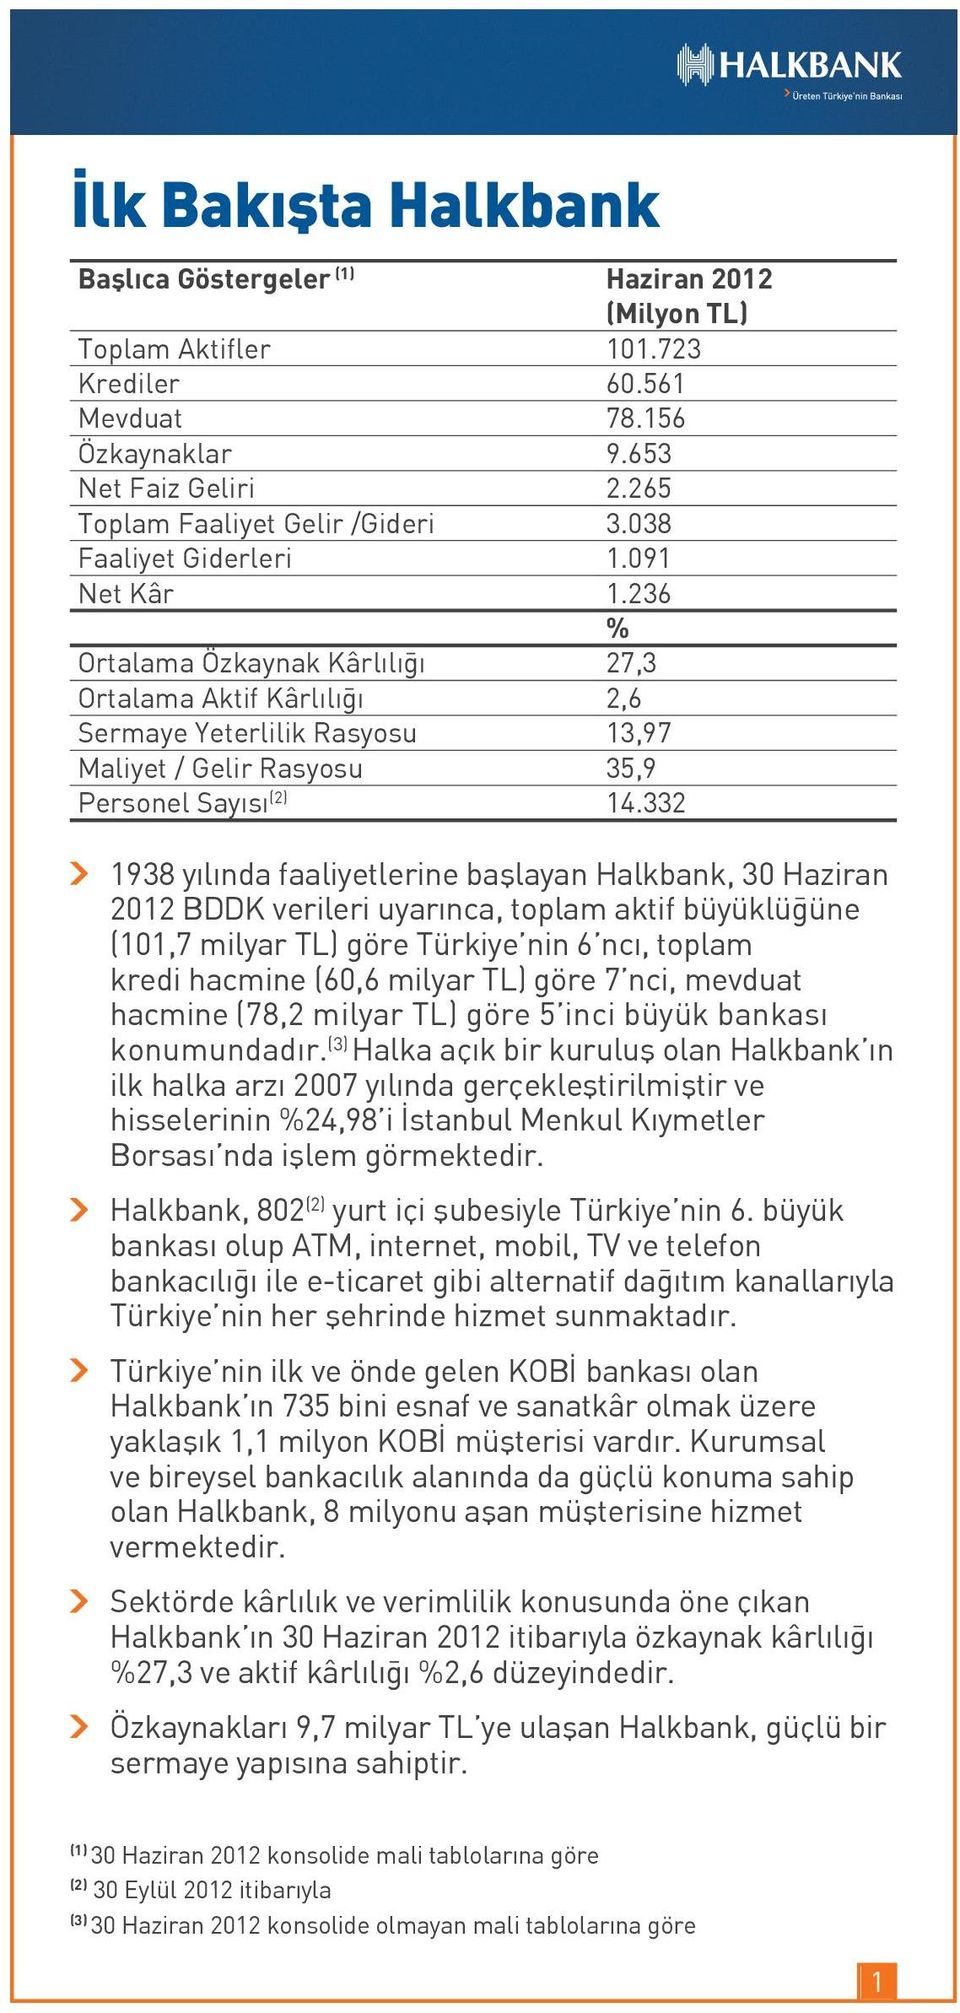 332 1938 yılında faaliyetlerine başlayan Halkbank, 30 Haziran 2012 BDDK verileri uyarınca, toplam aktif büyüklüğüne (101,7 milyar TL) göre Türkiye nin 6 ncı, toplam kredi hacmine (60,6 milyar TL)